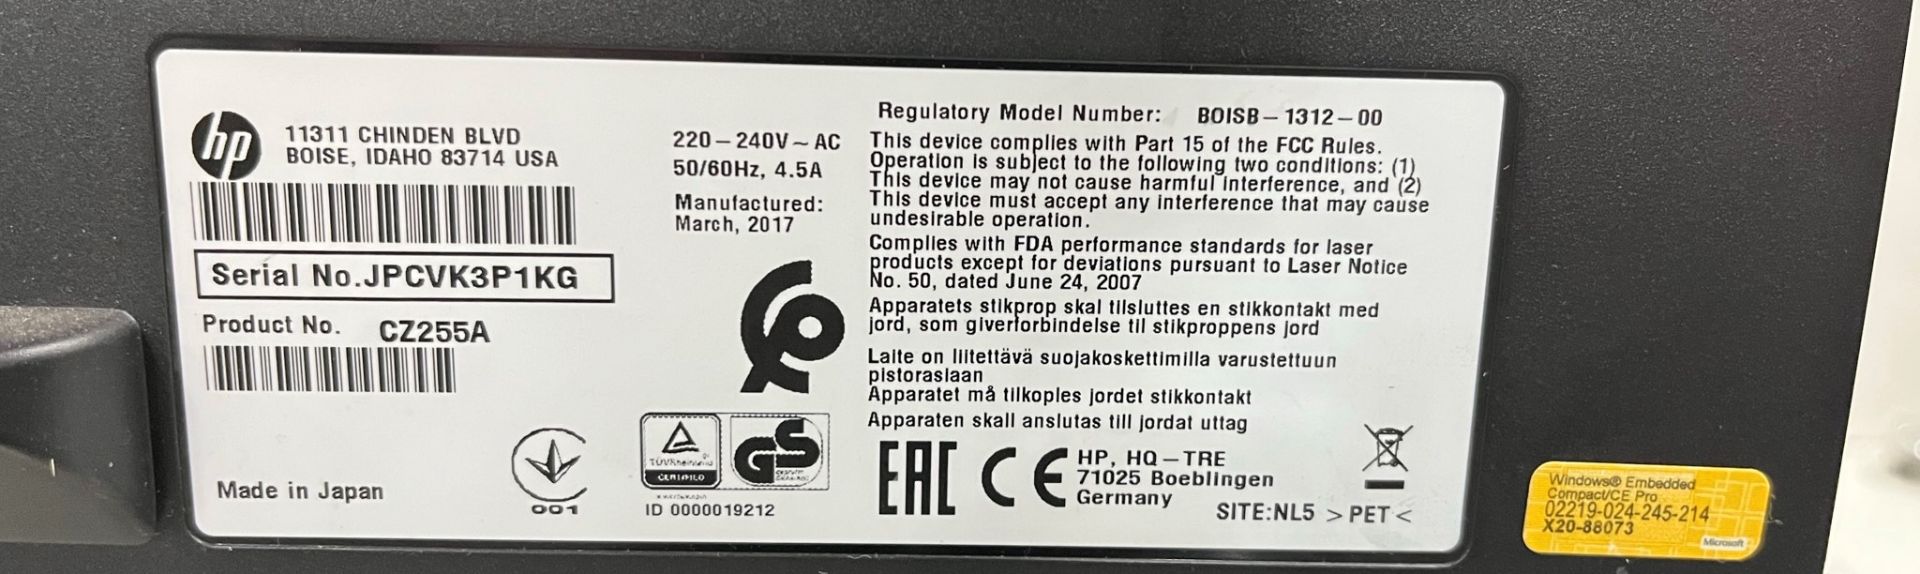 HP BOISB-1312-00 Color Laserjet Enterprise Multifunction Printer - Image 11 of 12